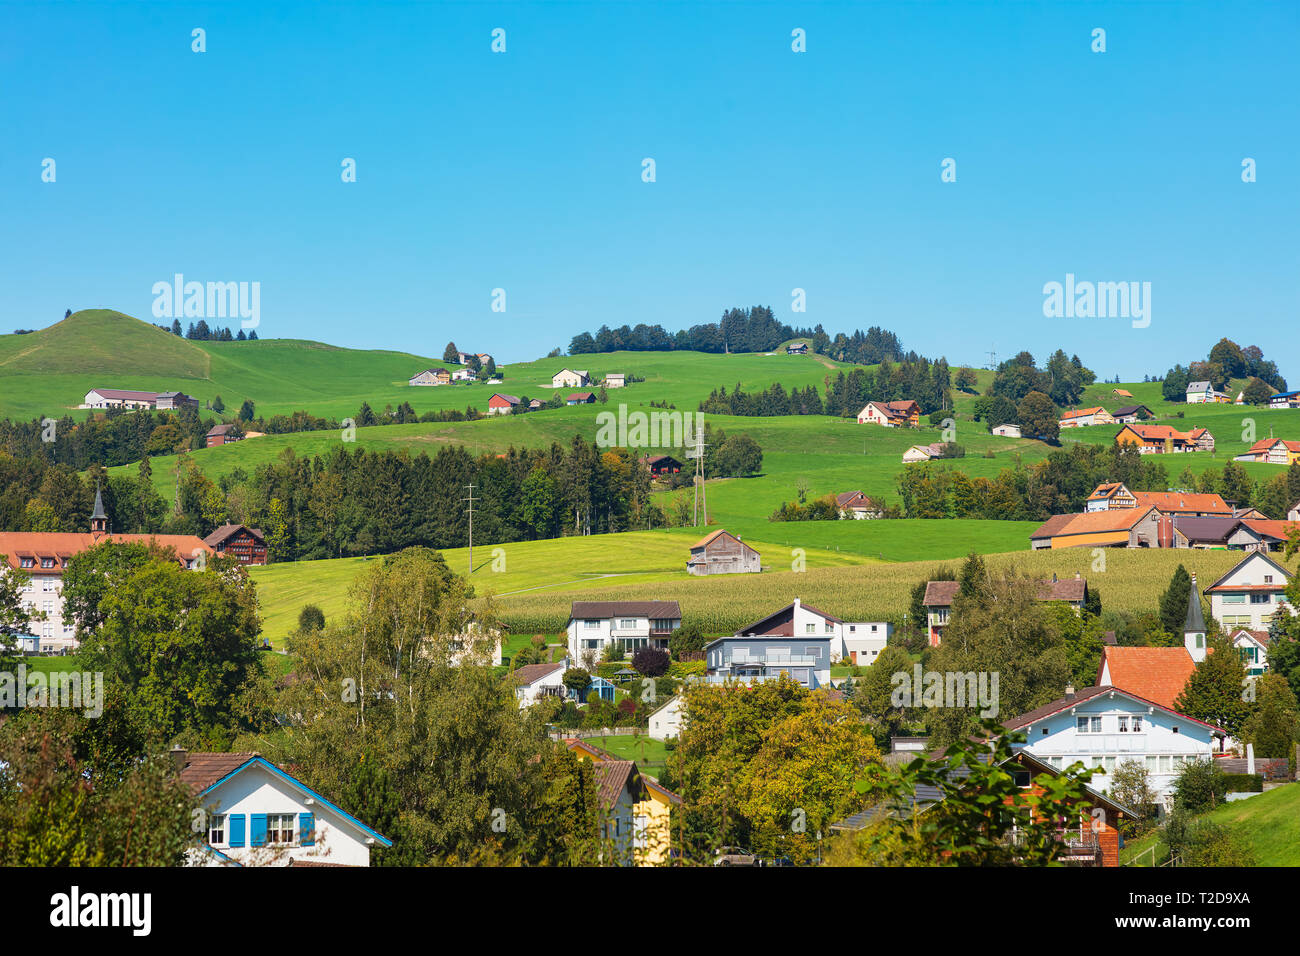 Aussicht in der Stadt Appenzell in der Schweiz Ende September. Appenzell ist die Hauptstadt des Schweizer Kantons Appenzell Innerrhoden. Stockfoto